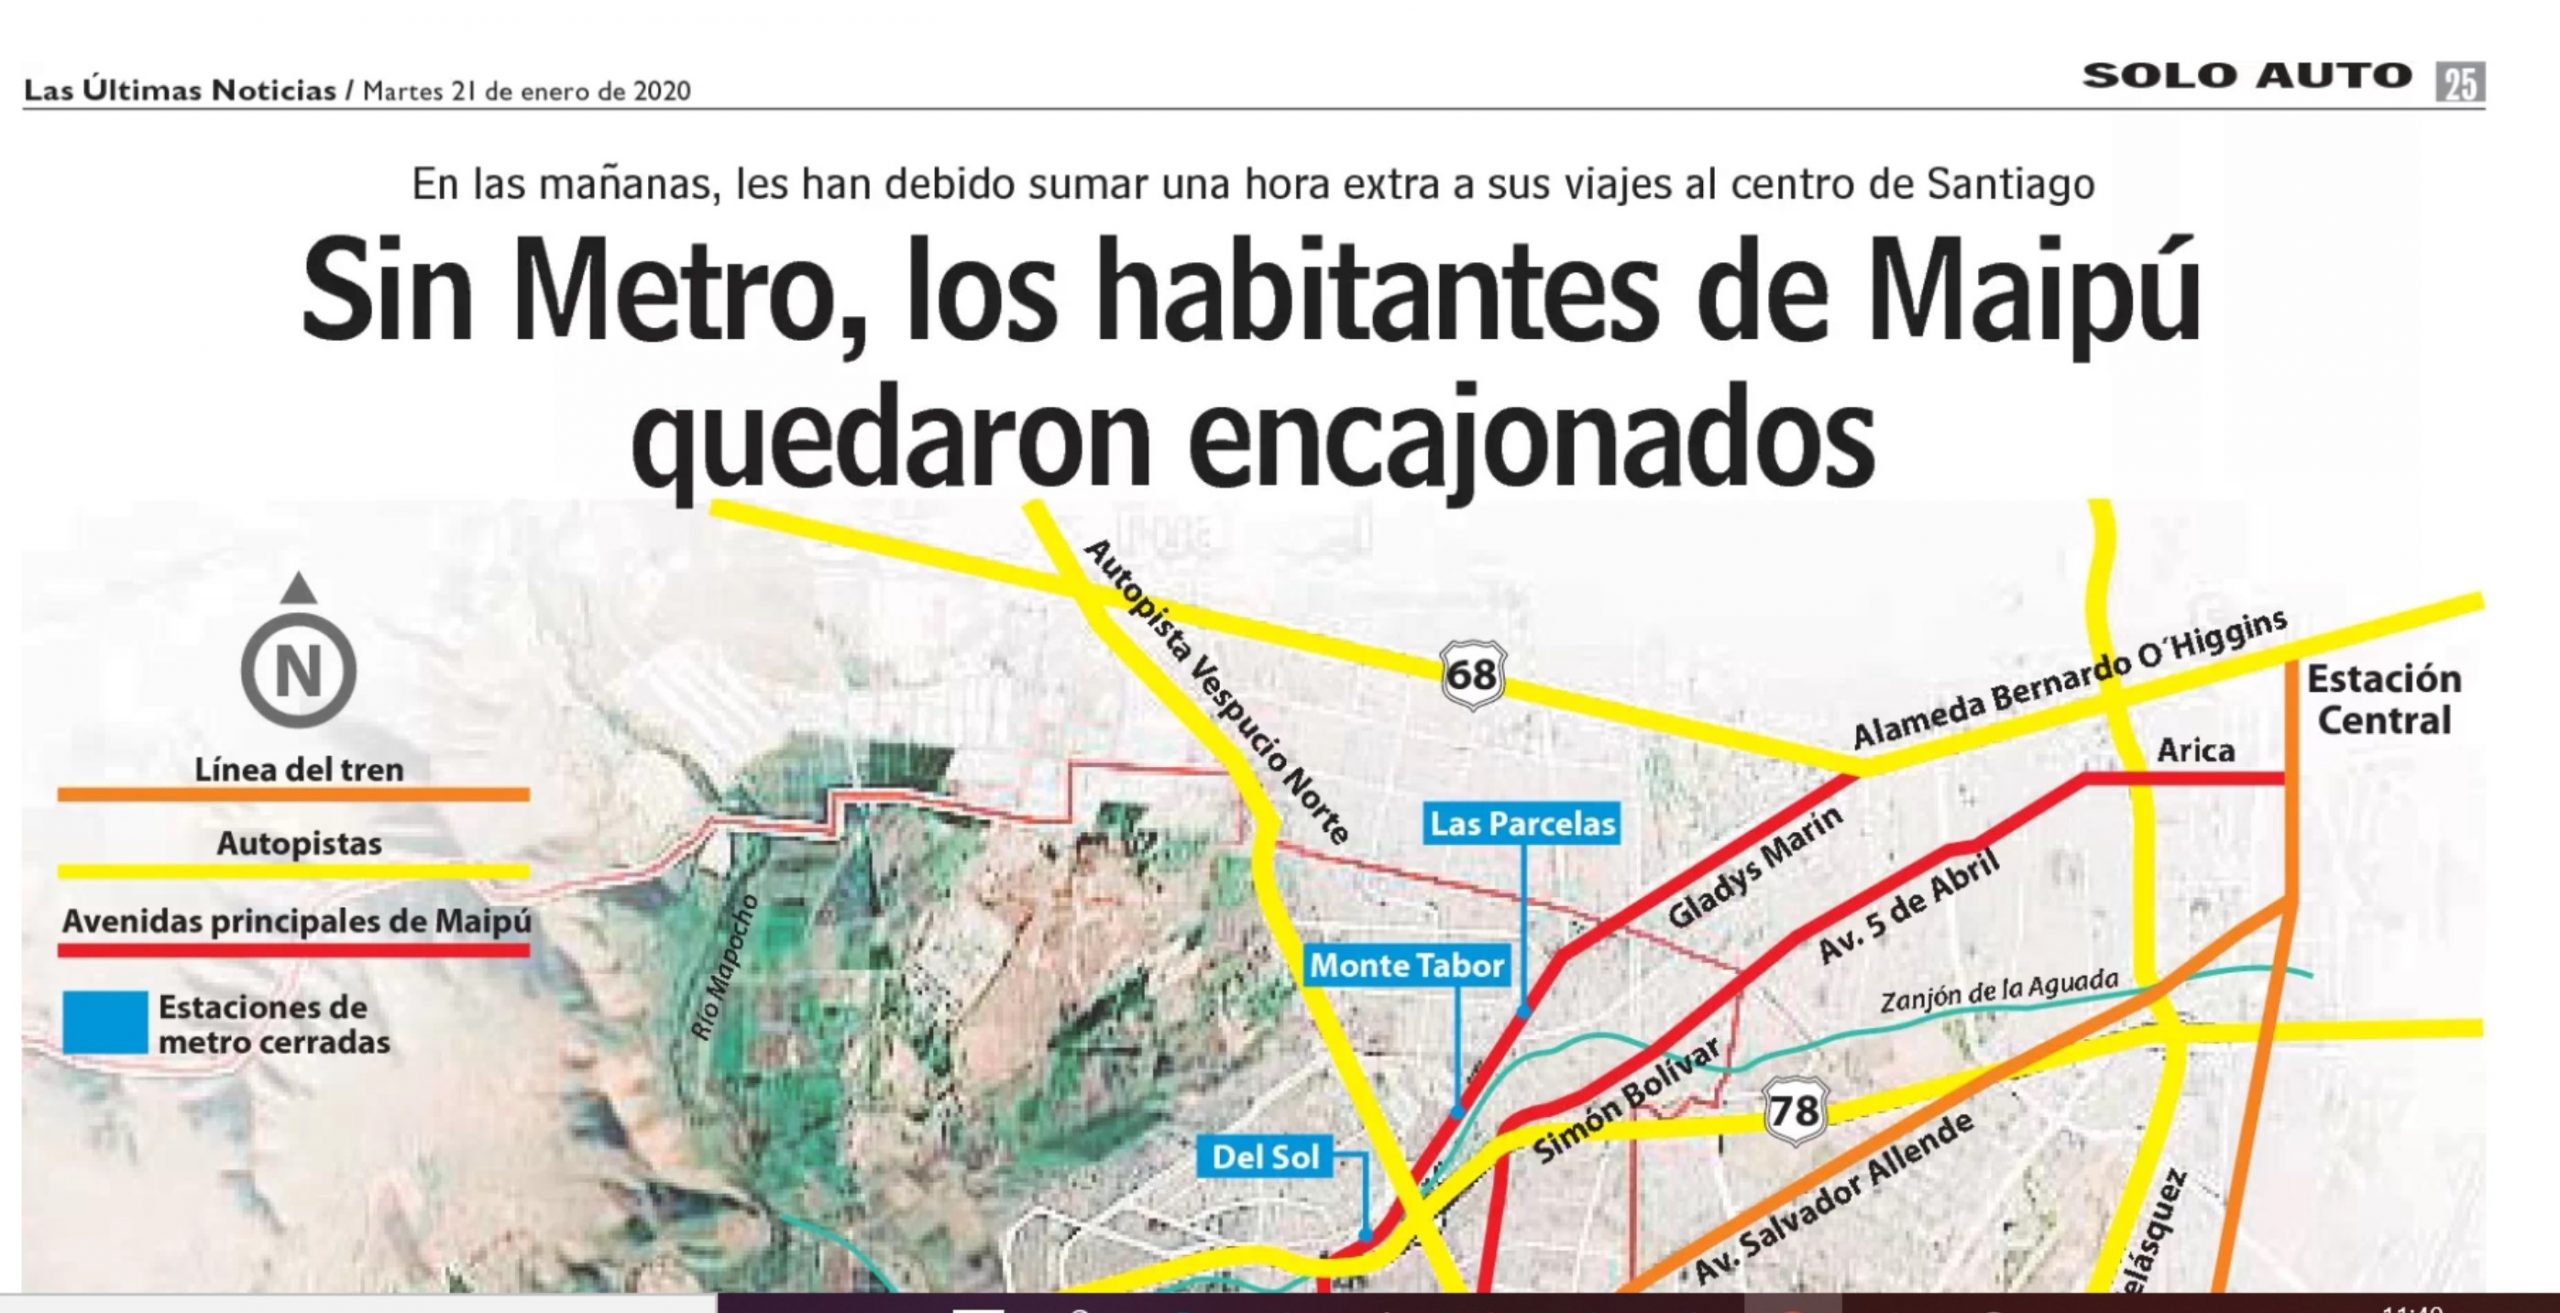 LUN: ¿Cómo se las arreglan los habitantes de Maipú desde el cierre del Metro?